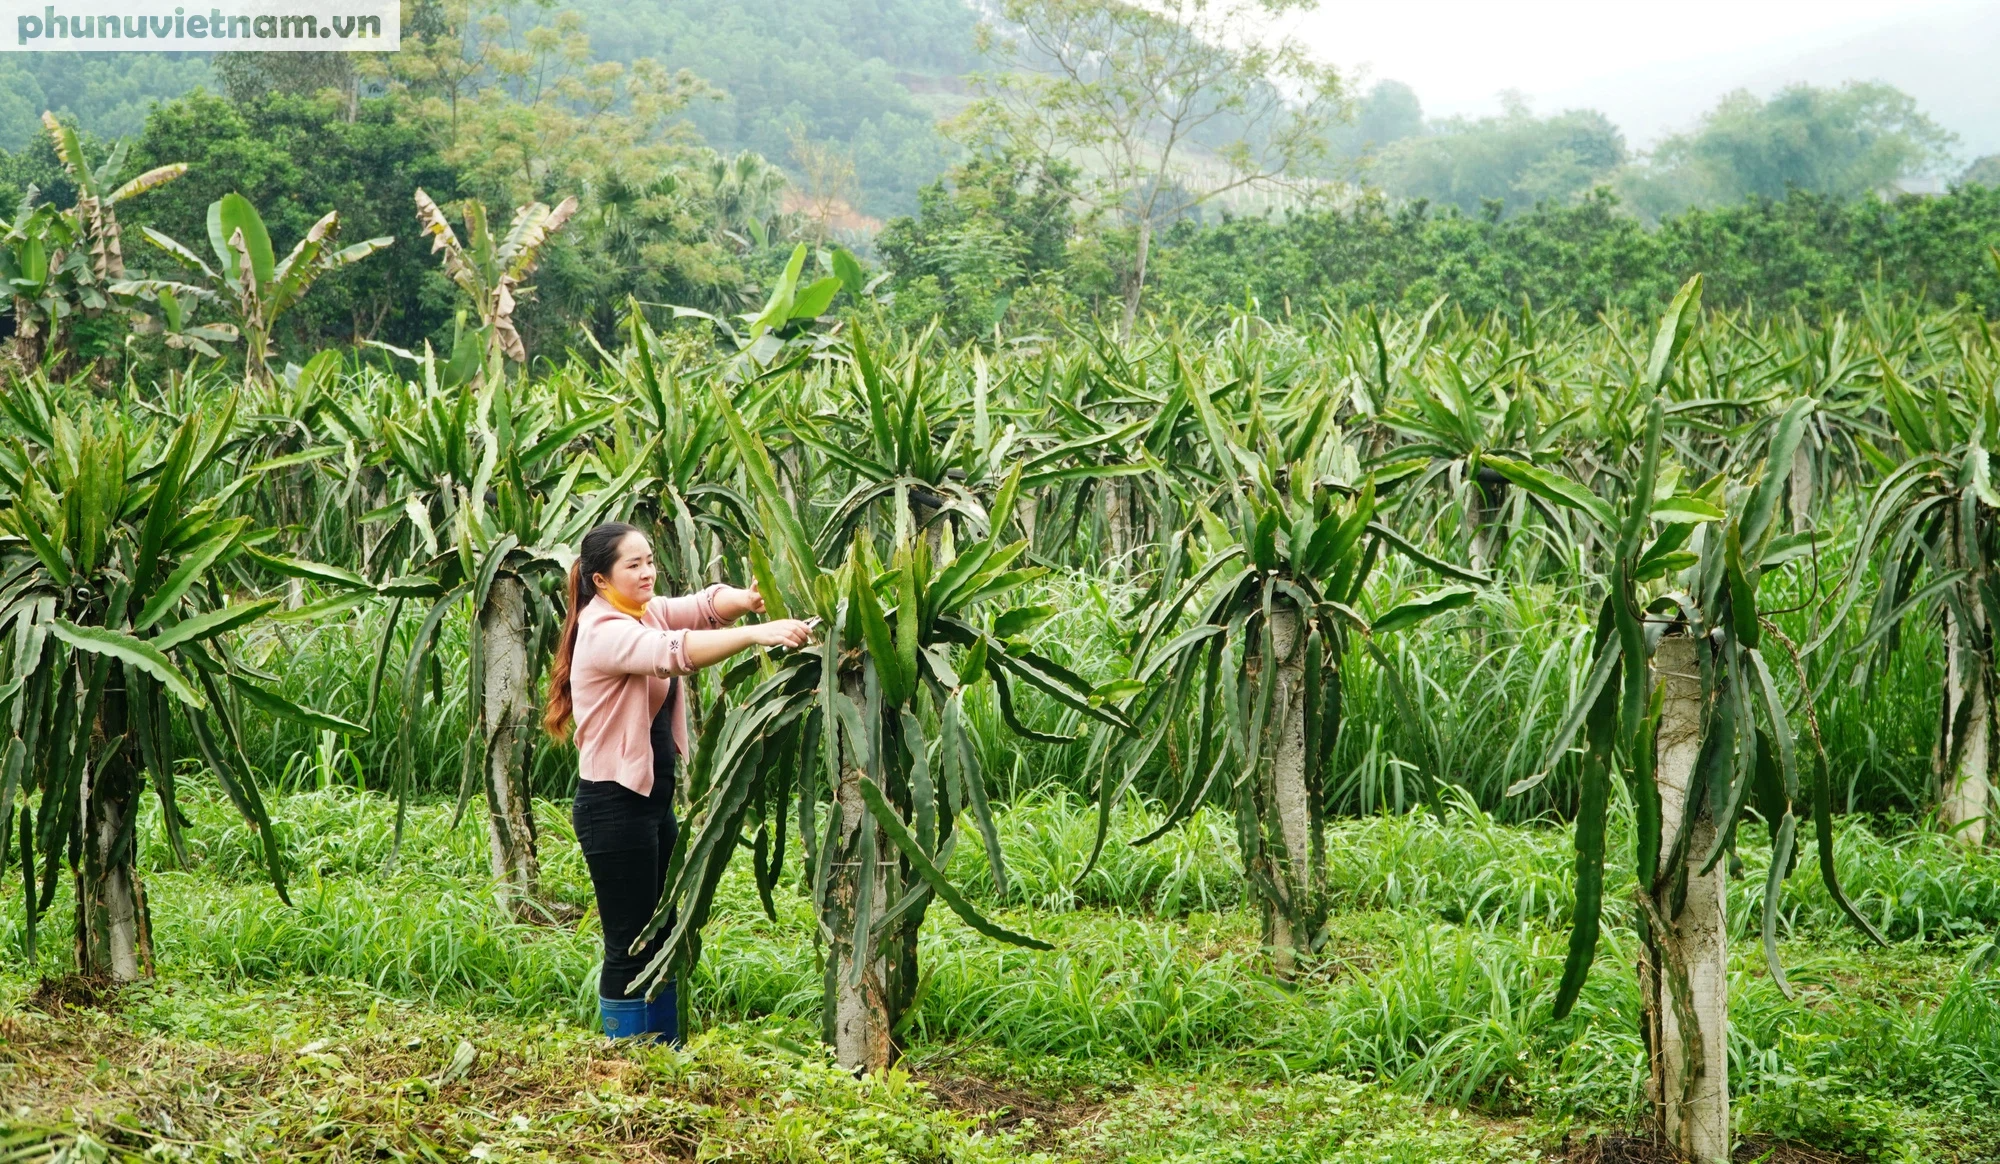 Nữ Chủ tịch Hợp tác xã người Dao khát khao định danh cho sản phẩm nông nghiệp - Ảnh 6.